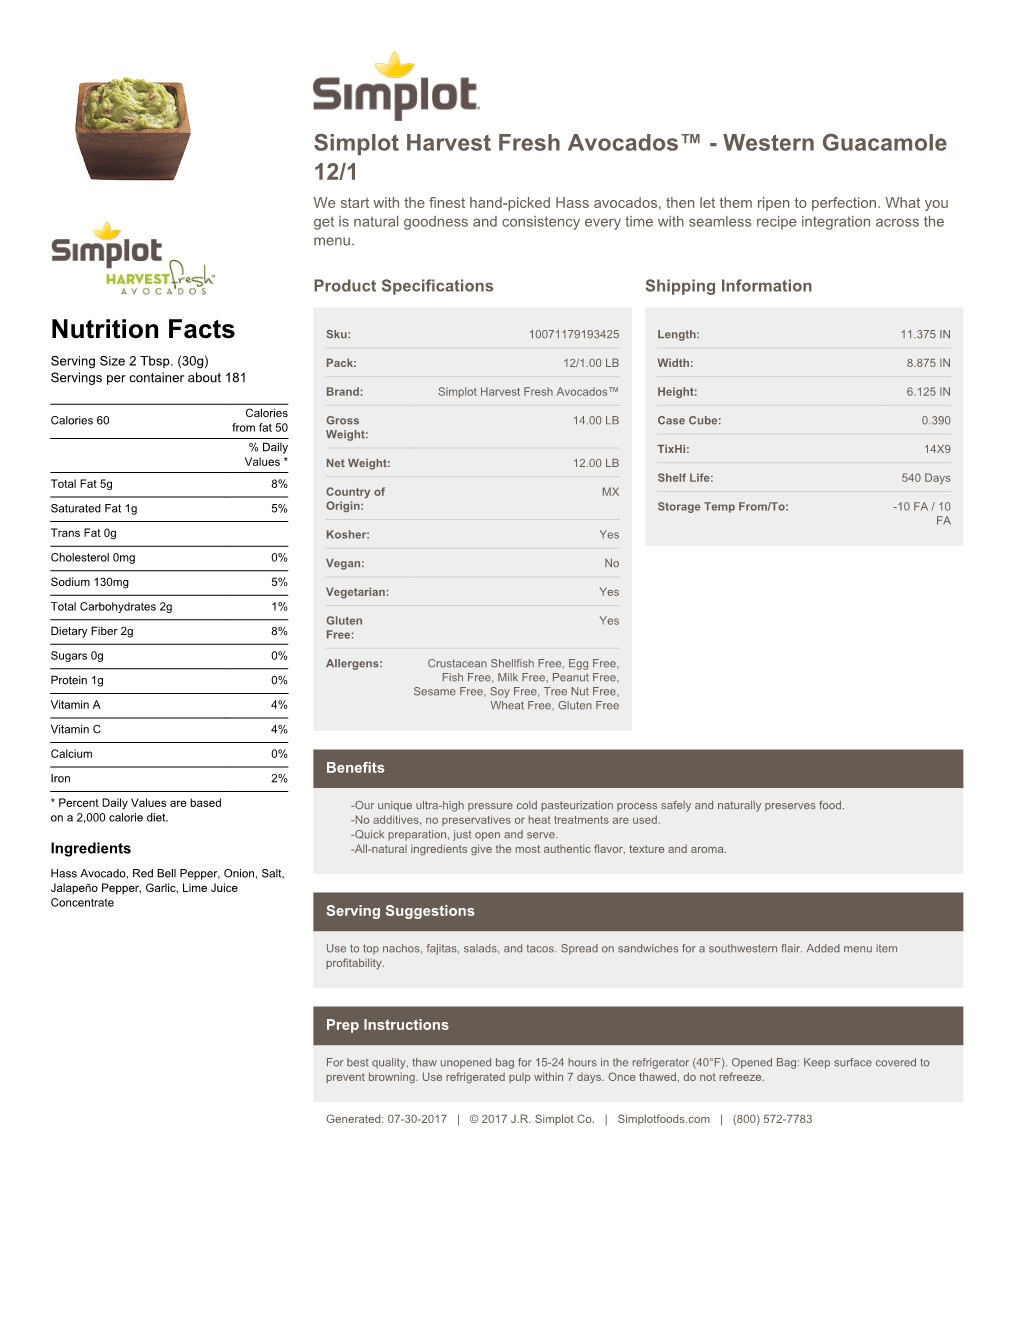 Simplot Foods PDF Sheet